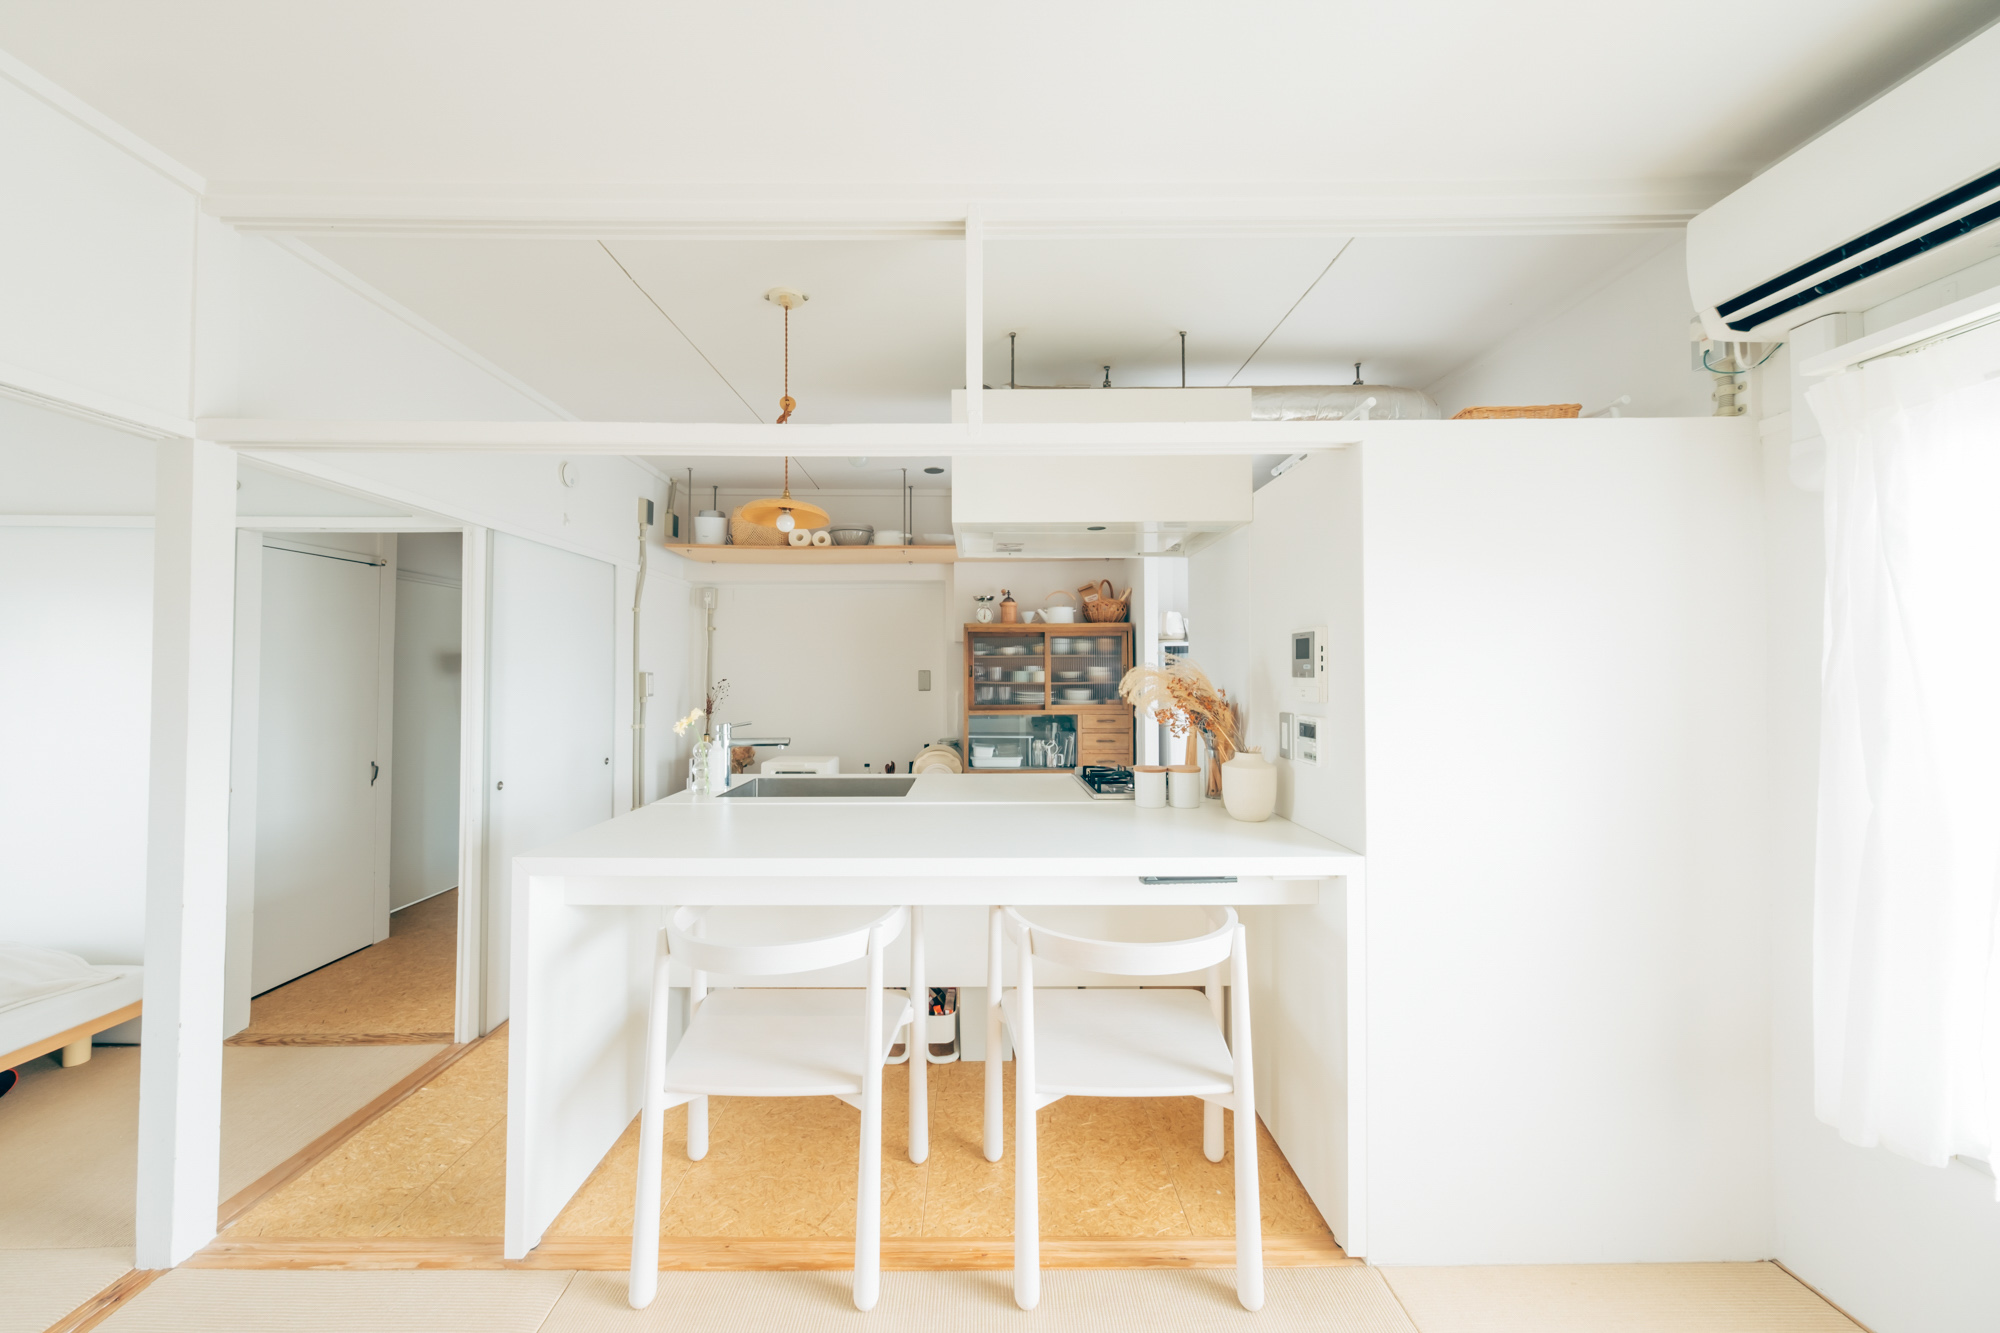 リノベーション団地で二人暮らしをされている方のお部屋。キッチンからまっすぐに伸びた、備え付けの真っ白なテーブルの上に、木製のランプシェードが吊るされて、とても印象的です。